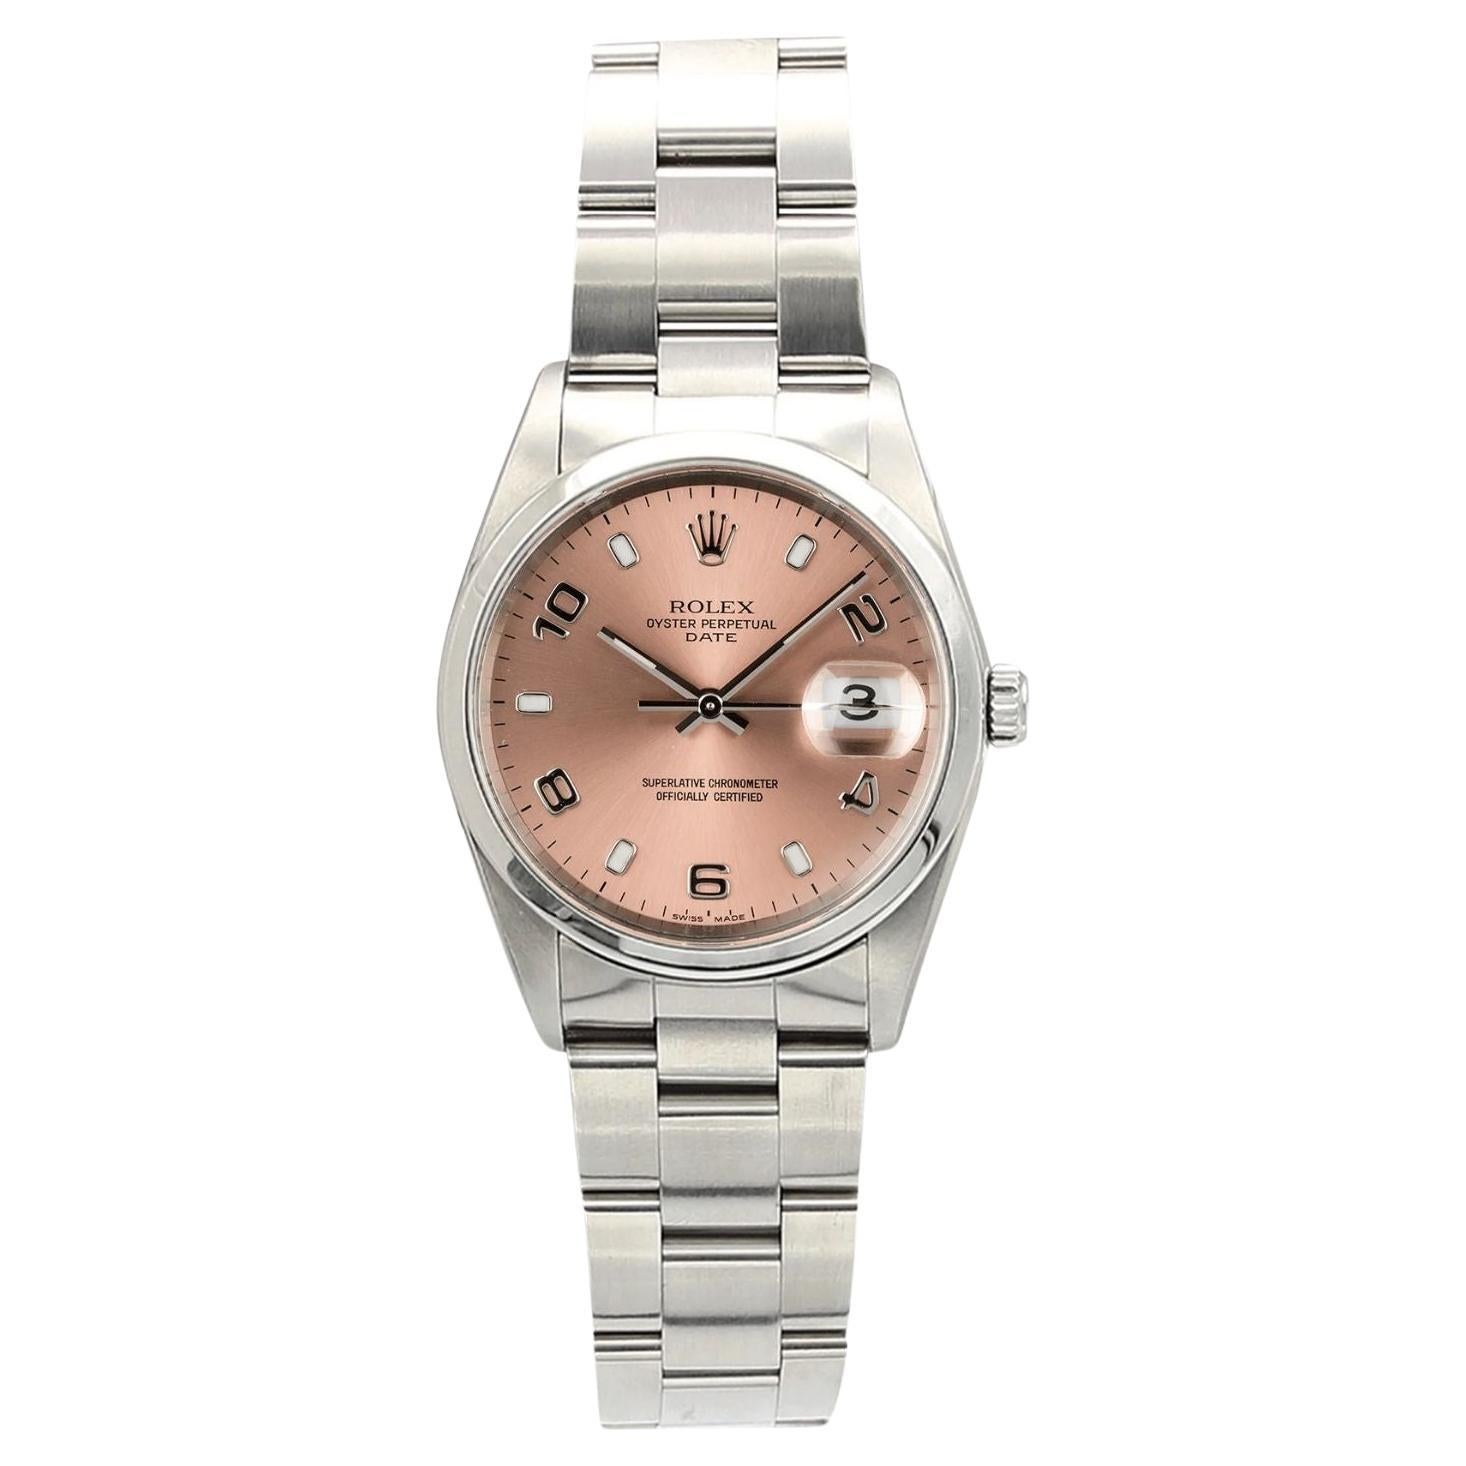 Rolex Date Ref. 15200 Watch - Salmon Arabic Dial, Steel Oyster Bracelet, Mint